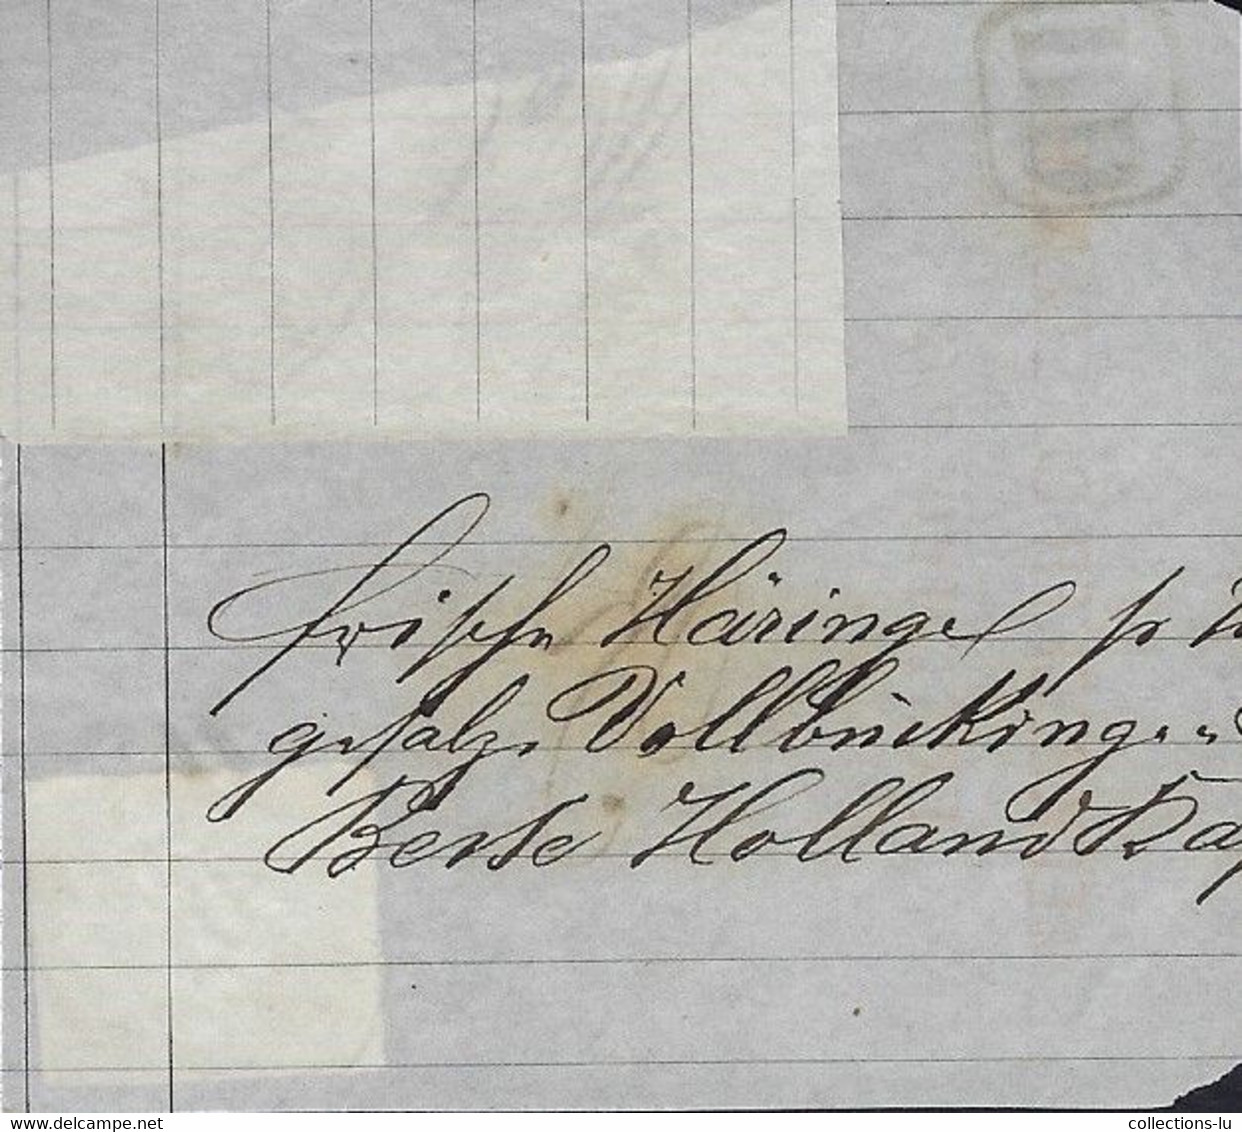 Luxembourg - Luxemburg - Briefstück Armoire 10Cts  Mi. 6b Entwertet Mit 9 Balken-Stempel - 1859-1880 Coat Of Arms